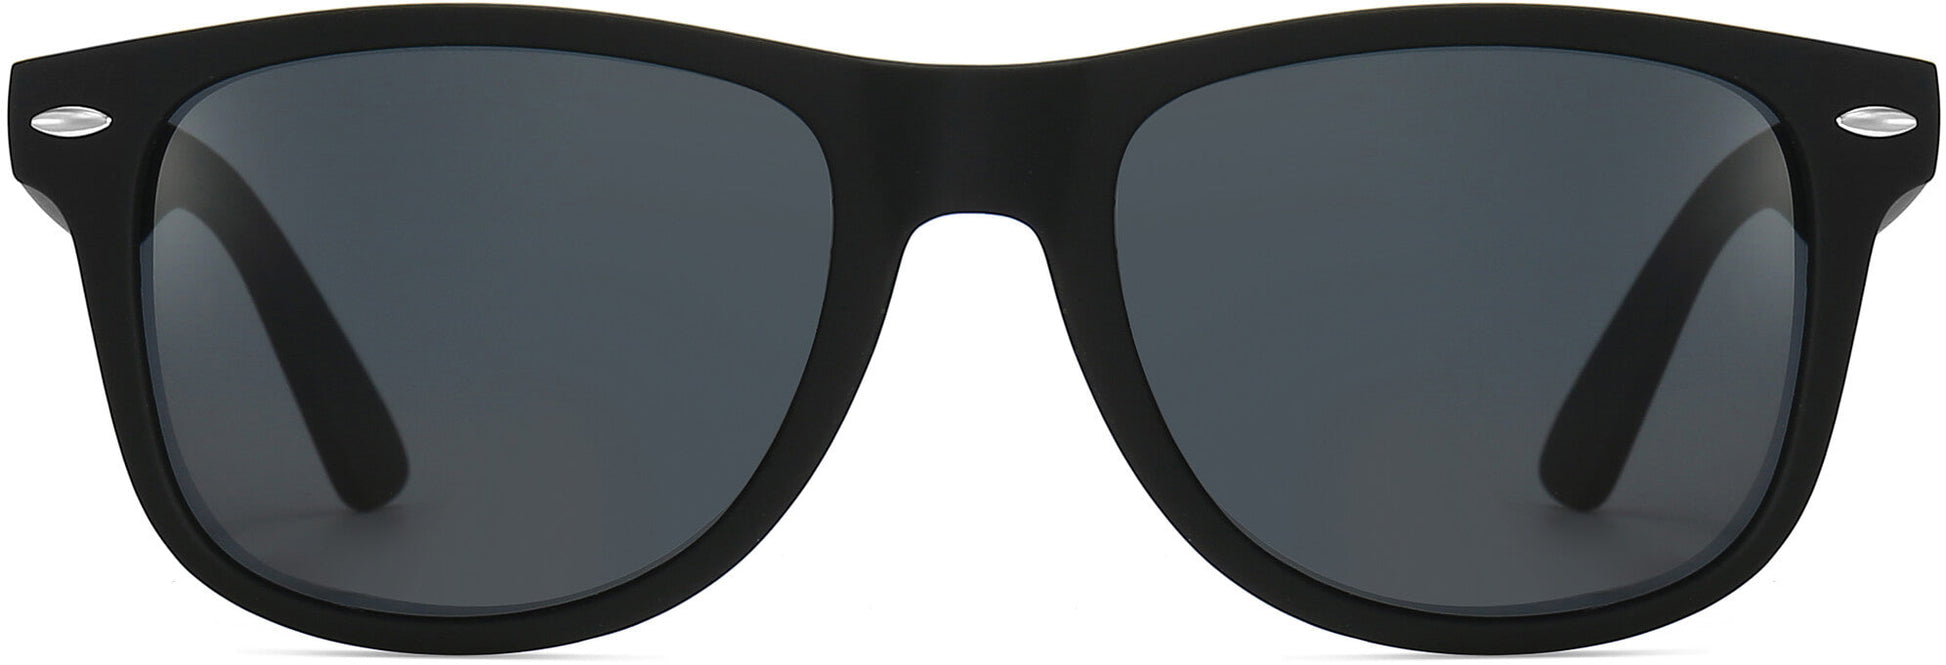 POP-CORN-26 sunglasses | Museum of Design in Plastics